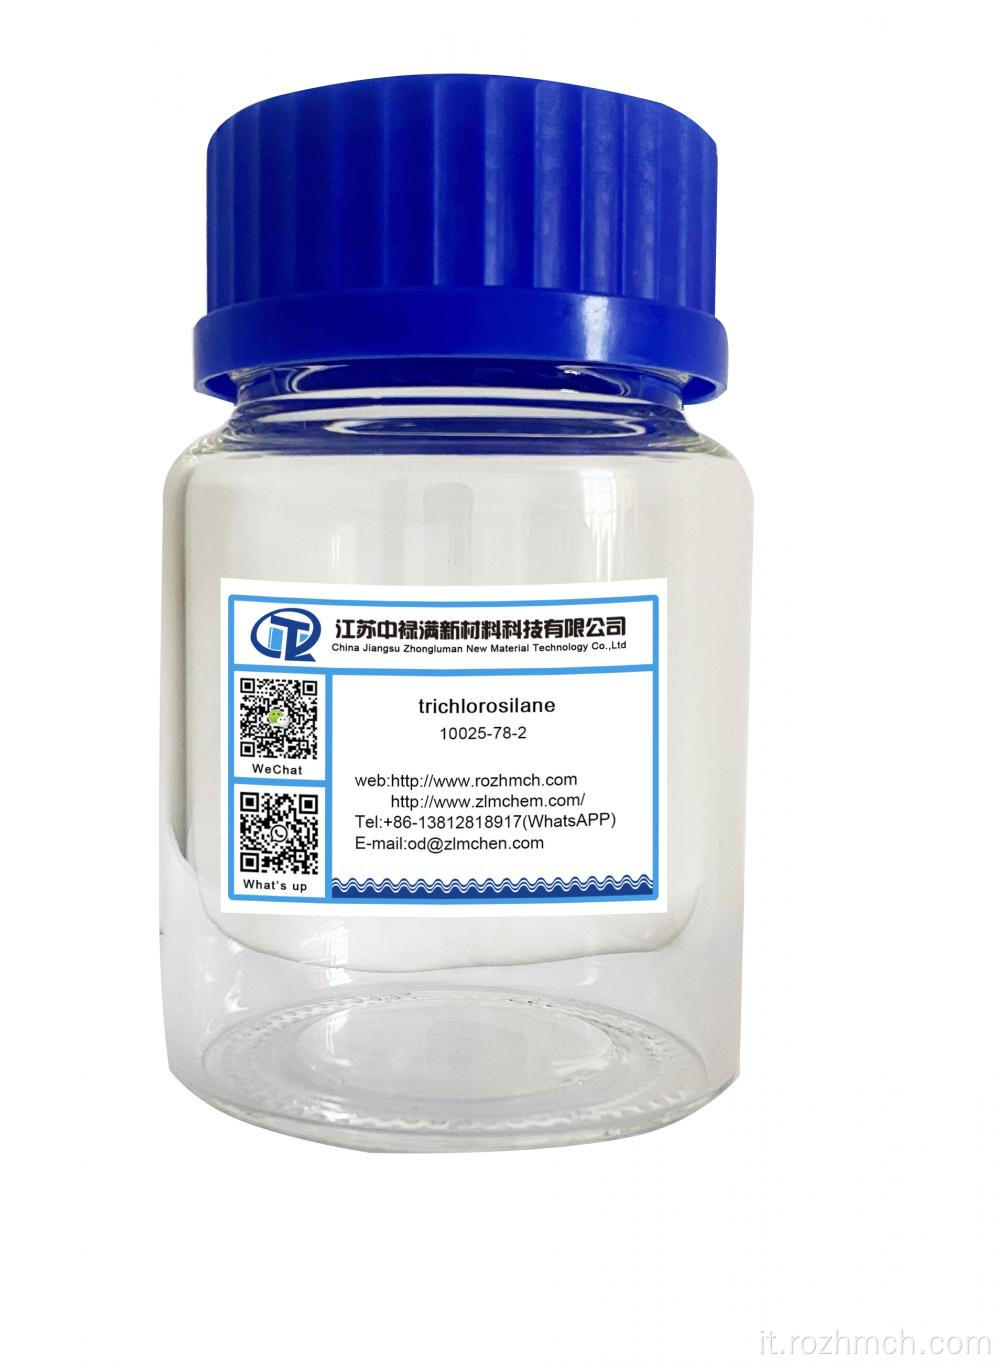 Trichlorosilano CAS n. 10025-78-2